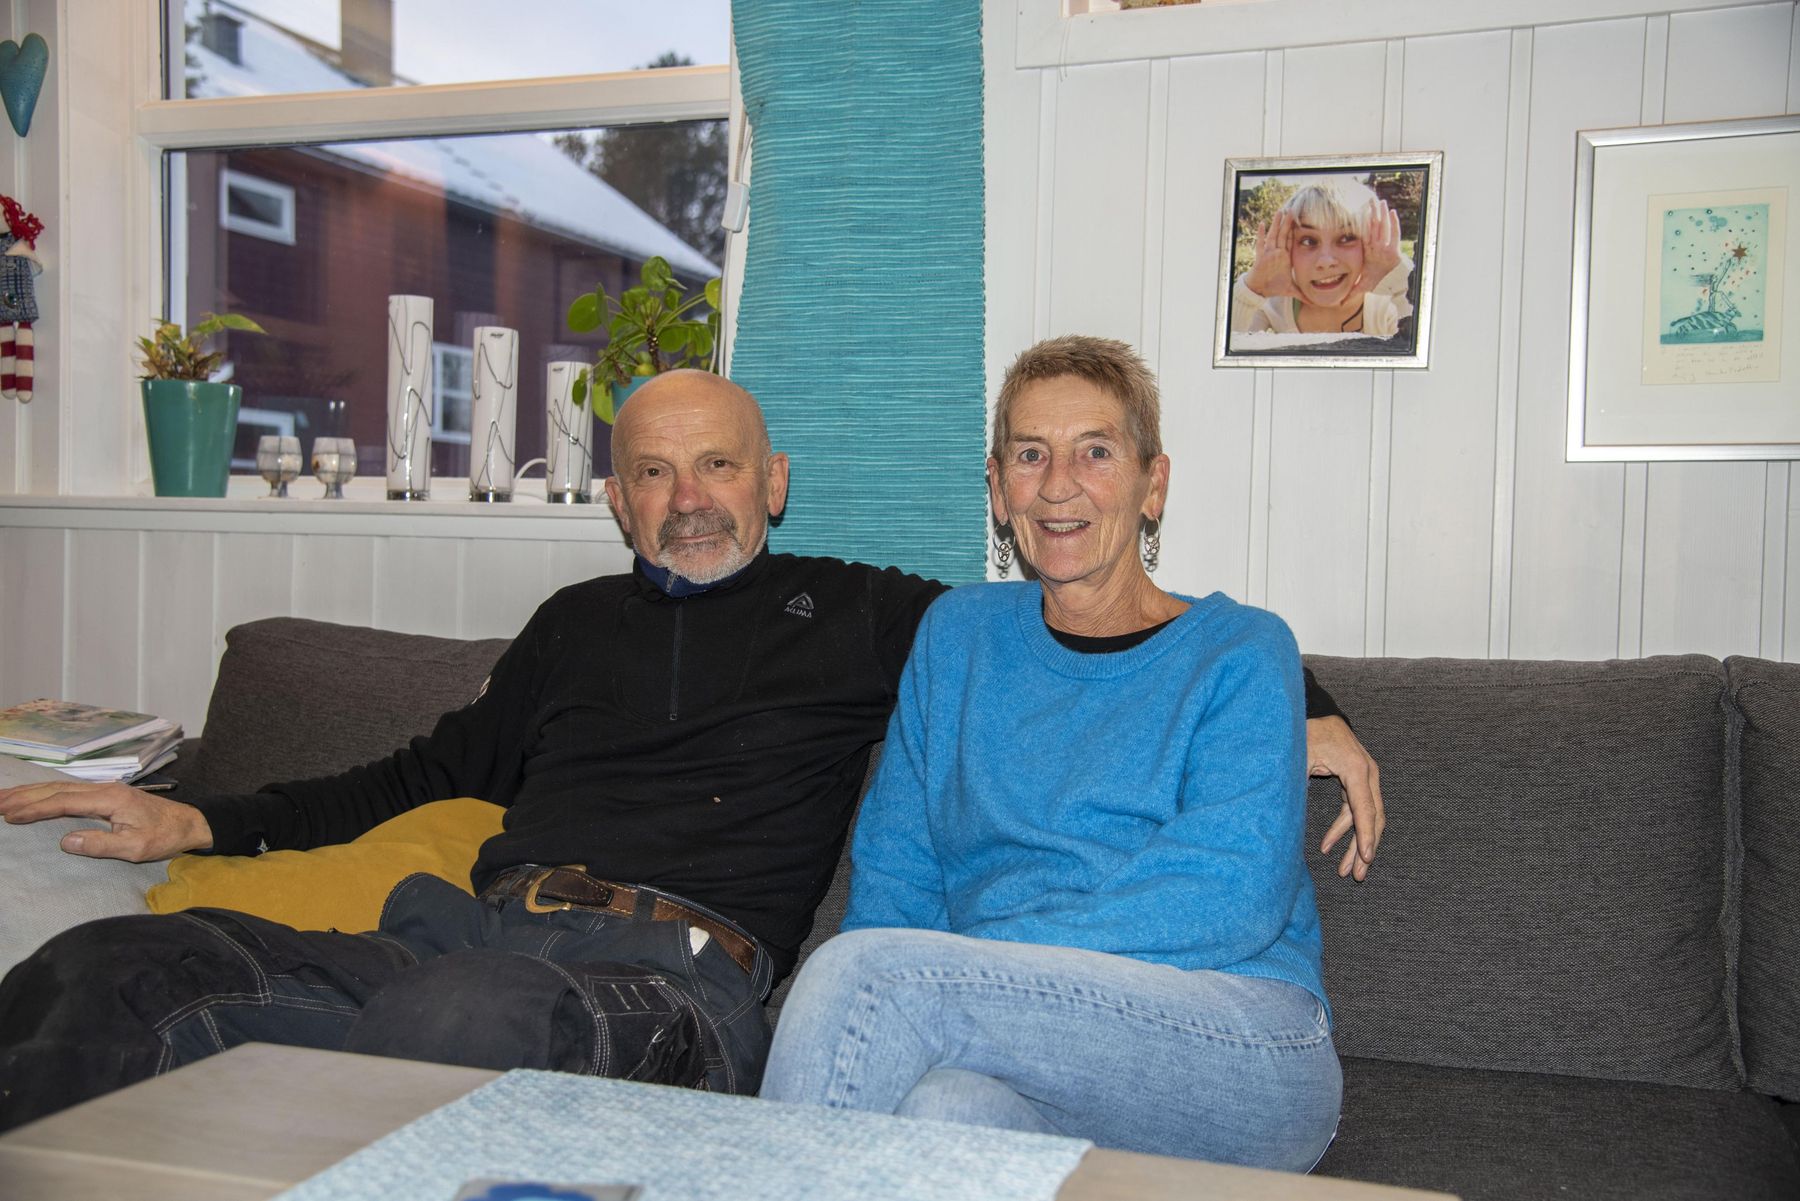 Ekteparet Viktor Johnsen og Britt Søvik gleder seg til å våkne opp til et varmt hus med den nye varmepumpen. ​​​​‌﻿‍﻿​‍​‍‌‍﻿﻿‌﻿​‍‌‍‍‌‌‍‌﻿‌‍‍‌‌‍﻿‍​‍​‍​﻿‍‍​‍​‍‌﻿​﻿‌‍​‌‌‍﻿‍‌‍‍‌‌﻿‌​‌﻿‍‌​‍﻿‍‌‍‍‌‌‍﻿﻿​‍​‍​‍﻿​​‍​‍‌‍‍​‌﻿​‍‌‍‌‌‌‍‌‍​‍​‍​﻿‍‍​‍​‍‌‍‍​‌﻿‌​‌﻿‌​‌﻿​​‌﻿​﻿​﻿‍‍​‍﻿﻿​‍﻿﻿‌‍‍‌‌﻿​﻿‌‍‍​‌‍​‌‌﻿‌‍‌﻿​﻿‌‍‍﻿‌﻿​‍‌‍​‌‌‍‌‍‌﻿‌​​‍﻿‍‌﻿​﻿‌‍​‌‌‍﻿‍‌‍‍‌‌﻿‌​‌﻿‍‌​‍﻿‍‌﻿​﻿‌﻿‌​‌﻿‌‌‌‍‌​‌‍‍‌‌‍﻿﻿​‍﻿﻿‌‍‍‌‌‍﻿‍‌﻿‌​‌‍‌‌‌‍﻿‍‌﻿‌​​‍﻿﻿‌‍‌‌‌‍‌​‌‍‍‌‌﻿‌​​‍﻿﻿‌‍﻿‌‌‍﻿﻿‌‍‌​‌‍‌‌​﻿﻿‌‌﻿​​‌﻿​‍‌‍‌‌‌﻿​﻿‌‍‌‌‌‍﻿‍‌﻿‌​‌‍​‌‌﻿‌​‌‍‍‌‌‍﻿﻿‌‍﻿‍​﻿‍﻿‌‍‍‌‌‍‌​​﻿﻿‌‌‍‌‌​﻿‌‍‌‍‌​​﻿​﻿‌‍​‌‌‍​﻿​﻿​‍‌‍​﻿​‍﻿‌‌‍​‌​﻿‌‌​﻿‌‌​﻿‌​​‍﻿‌​﻿‌​‌‍​‍‌‍​﻿​﻿‌‍​‍﻿‌​﻿‍‌​﻿​‌‌‍​﻿​﻿​‍​‍﻿‌​﻿‌​‌‍‌‌‌‍‌‌‌‍​﻿‌‍‌‌‌‍‌​‌‍​‌​﻿‌‍​﻿‌‍‌‍‌‍‌‍‌​‌‍‌​​﻿‍﻿‌﻿‌​‌﻿‍‌‌﻿​​‌‍‌‌​﻿﻿‌‌‍​‌‌﻿​‍‌﻿‌​‌‍‍‌‌‍​﻿‌‍﻿​‌‍‌‌​﻿‍﻿‌﻿​​‌‍​‌‌﻿‌​‌‍‍​​﻿﻿‌‌‍​﻿‌‍﻿﻿‌‍﻿‍‌﻿‌​‌‍‌‌‌‍﻿‍‌﻿‌​​‍‌‌​﻿‌‌‌​​‍‌‌﻿﻿‌‍‍﻿‌‍‌‌‌﻿‍‌​‍‌‌​﻿​﻿‌​‌​​‍‌‌​﻿​﻿‌​‌​​‍‌‌​﻿​‍​﻿​‍​﻿‍​‌‍​‍‌‍​‍‌‍‌‍‌‍​‍‌‍‌‍​﻿‌​​﻿‌​​﻿‌​​﻿​﻿‌‍‌​‌‍‌‌​‍‌‌​﻿​‍​﻿​‍​‍‌‌​﻿‌‌‌​‌​​‍﻿‍‌‍​‌‌‍﻿​‌﻿‌​​﻿﻿﻿‌‍​‍‌‍​‌‌﻿​﻿‌‍‌‌‌‌‌‌‌﻿​‍‌‍﻿​​﻿﻿‌‌‍‍​‌﻿‌​‌﻿‌​‌﻿​​‌﻿​﻿​‍‌‌​﻿​﻿‌​​‌​‍‌‌​﻿​‍‌​‌‍​‍‌‌​﻿​‍‌​‌‍‌‍‍‌‌﻿​﻿‌‍‍​‌‍​‌‌﻿‌‍‌﻿​﻿‌‍‍﻿‌﻿​‍‌‍​‌‌‍‌‍‌﻿‌​​‍﻿‍‌﻿​﻿‌‍​‌‌‍﻿‍‌‍‍‌‌﻿‌​‌﻿‍‌​‍﻿‍‌﻿​﻿‌﻿‌​‌﻿‌‌‌‍‌​‌‍‍‌‌‍﻿﻿​‍‌‍‌‍‍‌‌‍‌​​﻿﻿‌‌‍‌‌​﻿‌‍‌‍‌​​﻿​﻿‌‍​‌‌‍​﻿​﻿​‍‌‍​﻿​‍﻿‌‌‍​‌​﻿‌‌​﻿‌‌​﻿‌​​‍﻿‌​﻿‌​‌‍​‍‌‍​﻿​﻿‌‍​‍﻿‌​﻿‍‌​﻿​‌‌‍​﻿​﻿​‍​‍﻿‌​﻿‌​‌‍‌‌‌‍‌‌‌‍​﻿‌‍‌‌‌‍‌​‌‍​‌​﻿‌‍​﻿‌‍‌‍‌‍‌‍‌​‌‍‌​​‍‌‍‌﻿‌​‌﻿‍‌‌﻿​​‌‍‌‌​﻿﻿‌‌‍​‌‌﻿​‍‌﻿‌​‌‍‍‌‌‍​﻿‌‍﻿​‌‍‌‌​‍‌‍‌﻿​​‌‍​‌‌﻿‌​‌‍‍​​﻿﻿‌‌‍​﻿‌‍﻿﻿‌‍﻿‍‌﻿‌​‌‍‌‌‌‍﻿‍‌﻿‌​​‍‌‌​﻿‌‌‌​​‍‌‌﻿﻿‌‍‍﻿‌‍‌‌‌﻿‍‌​‍‌‌​﻿​﻿‌​‌​​‍‌‌​﻿​﻿‌​‌​​‍‌‌​﻿​‍​﻿​‍​﻿‍​‌‍​‍‌‍​‍‌‍‌‍‌‍​‍‌‍‌‍​﻿‌​​﻿‌​​﻿‌​​﻿​﻿‌‍‌​‌‍‌‌​‍‌‌​﻿​‍​﻿​‍​‍‌‌​﻿‌‌‌​‌​​‍﻿‍‌‍​‌‌‍﻿​‌﻿‌​​‍​‍‌﻿﻿‌